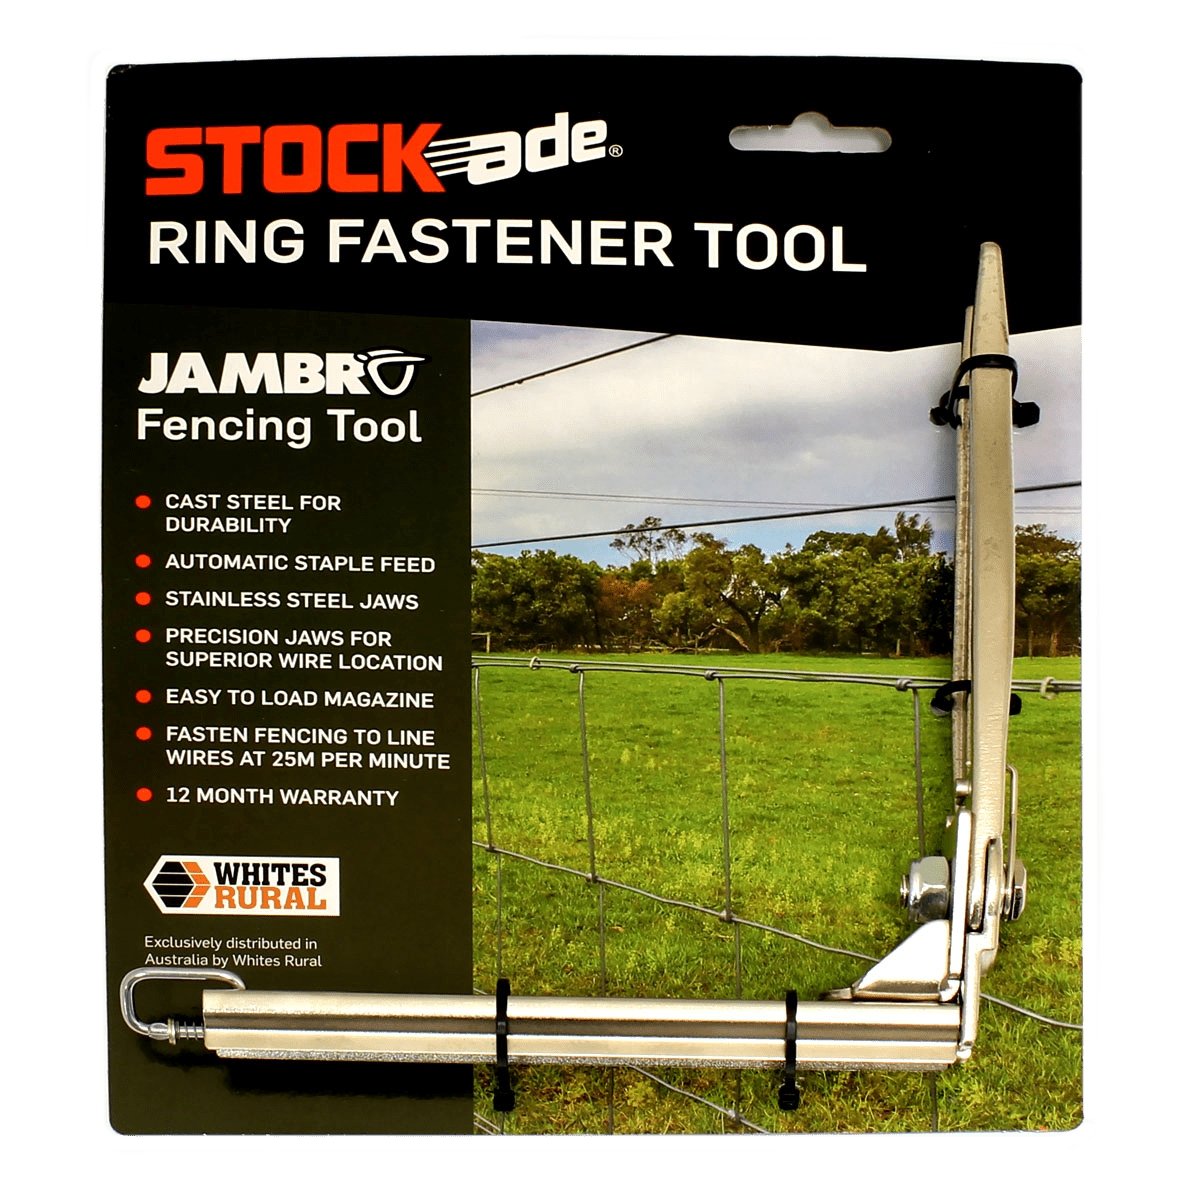 Ring Fastener Gun Jambro Stock-Ade Whites - Woonona Petfood & Produce